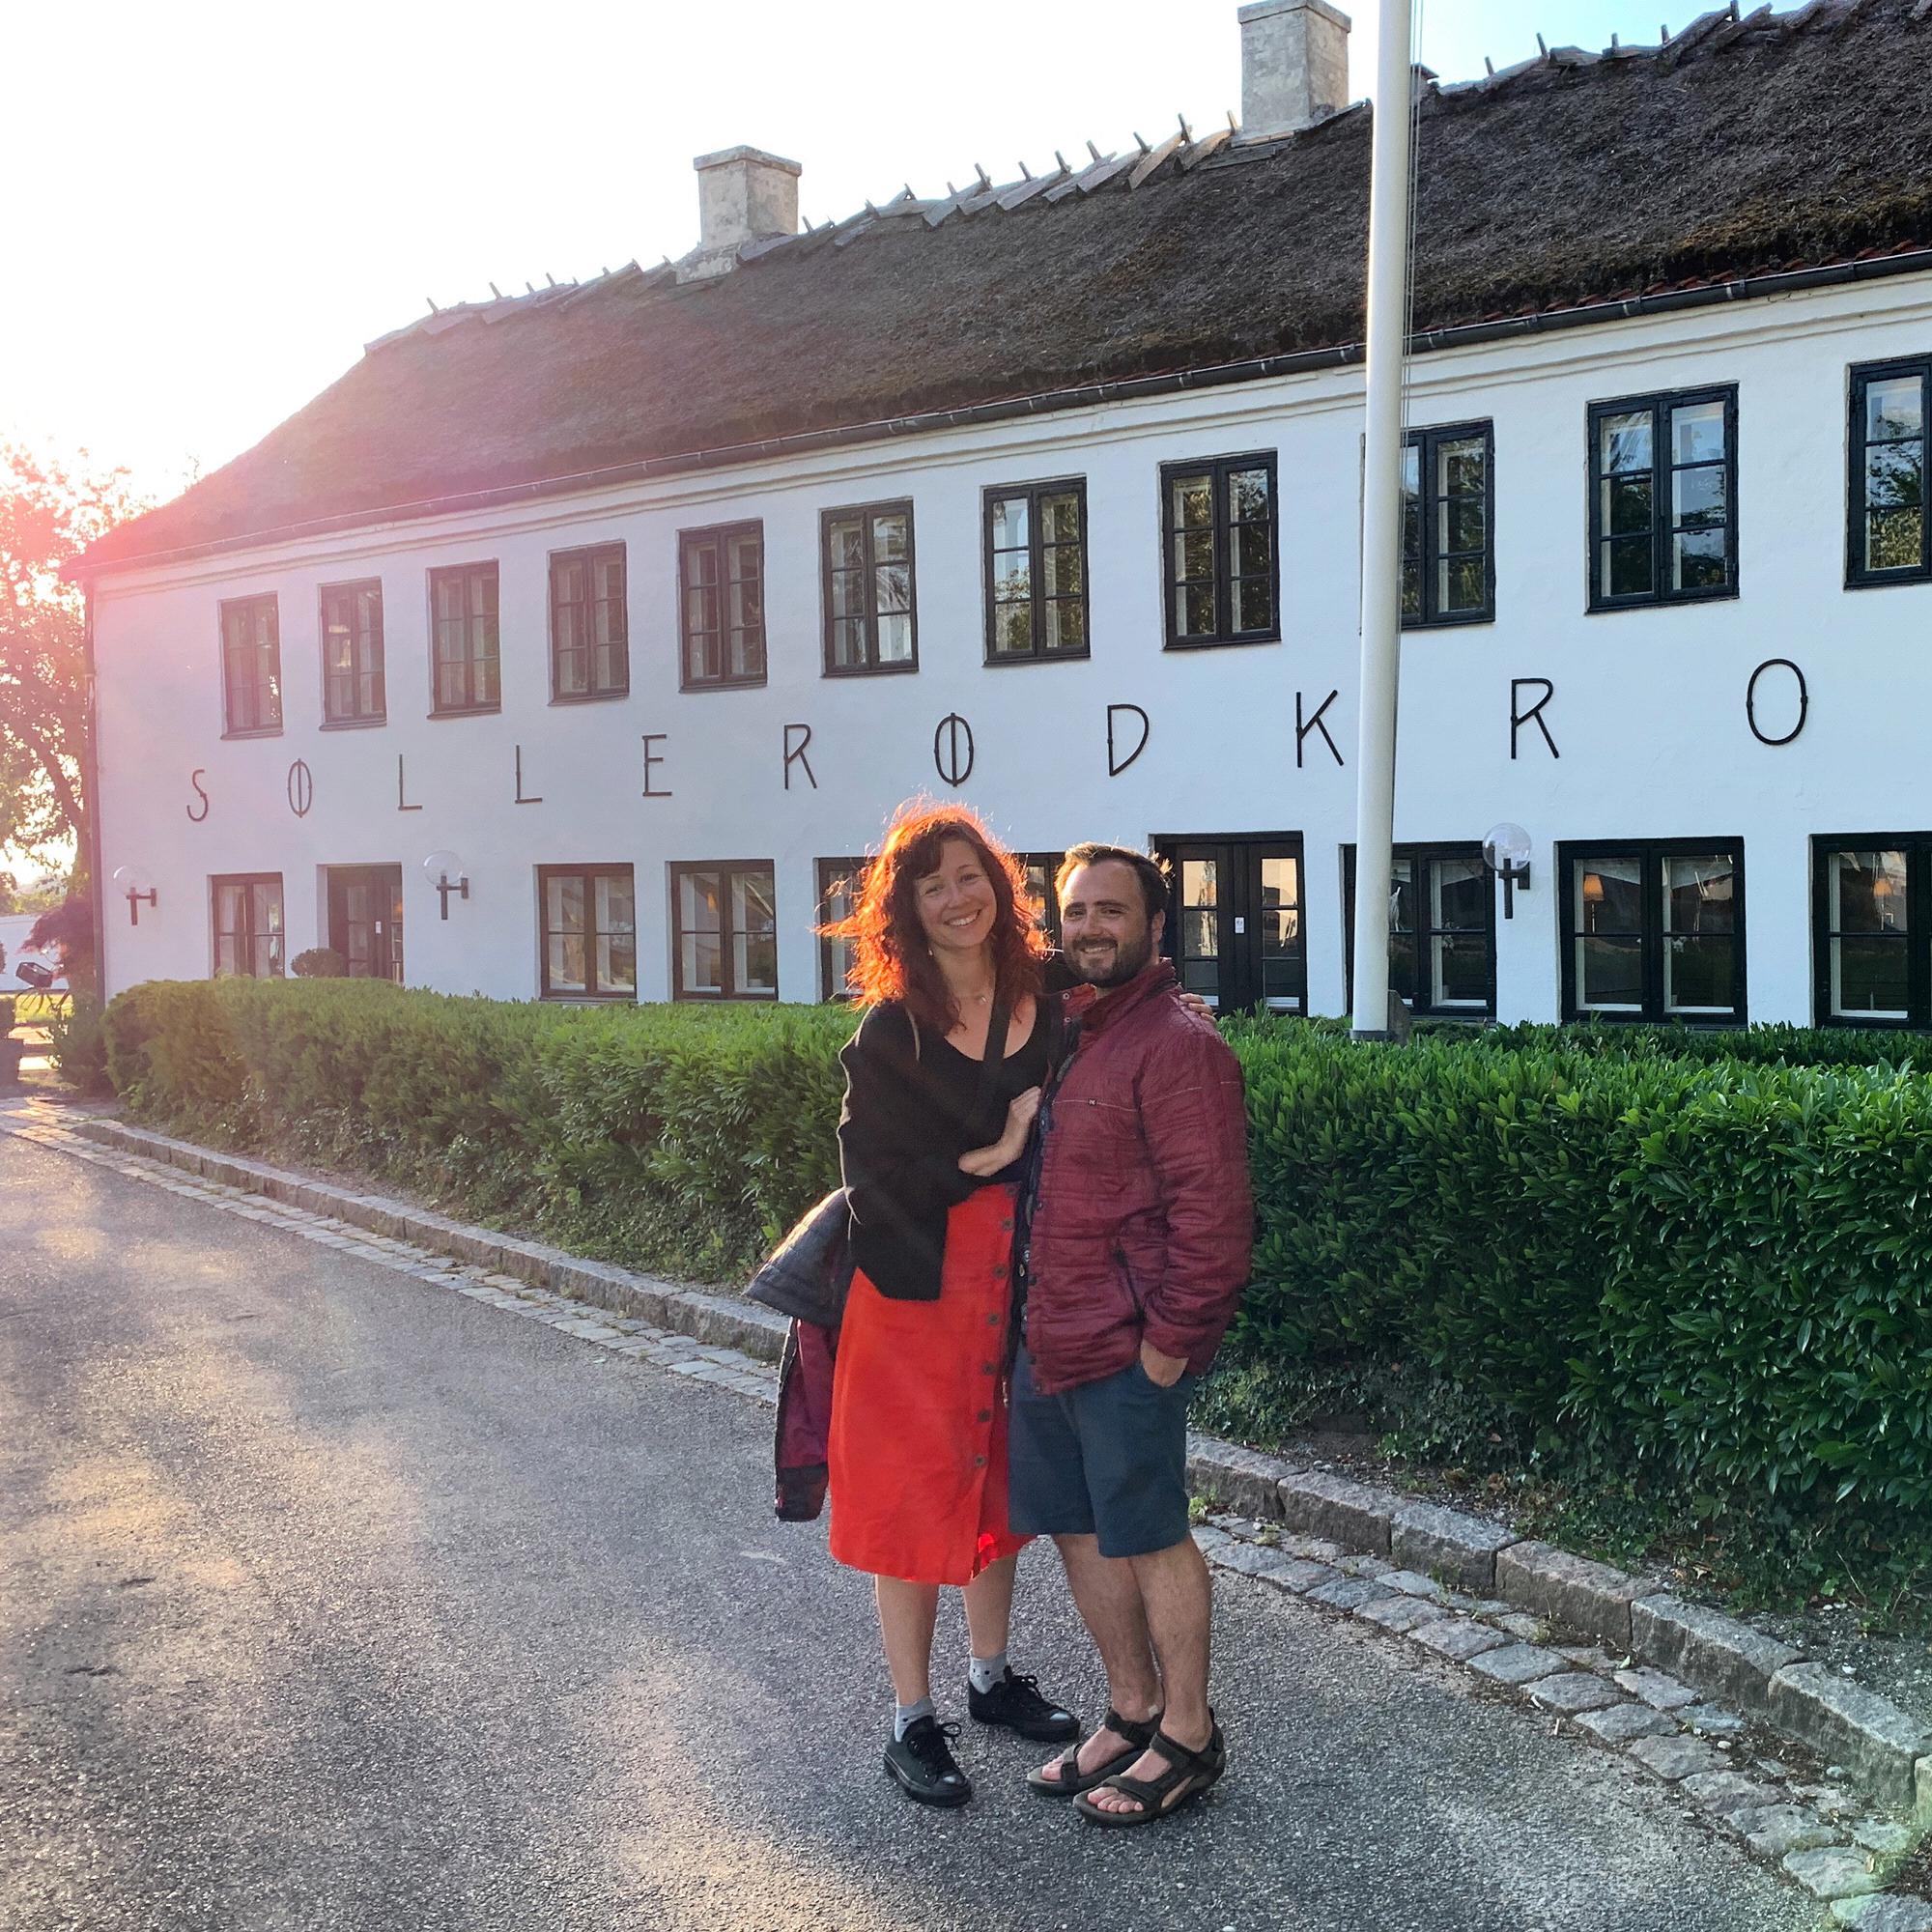 Visiting Denmark in Summer 2019